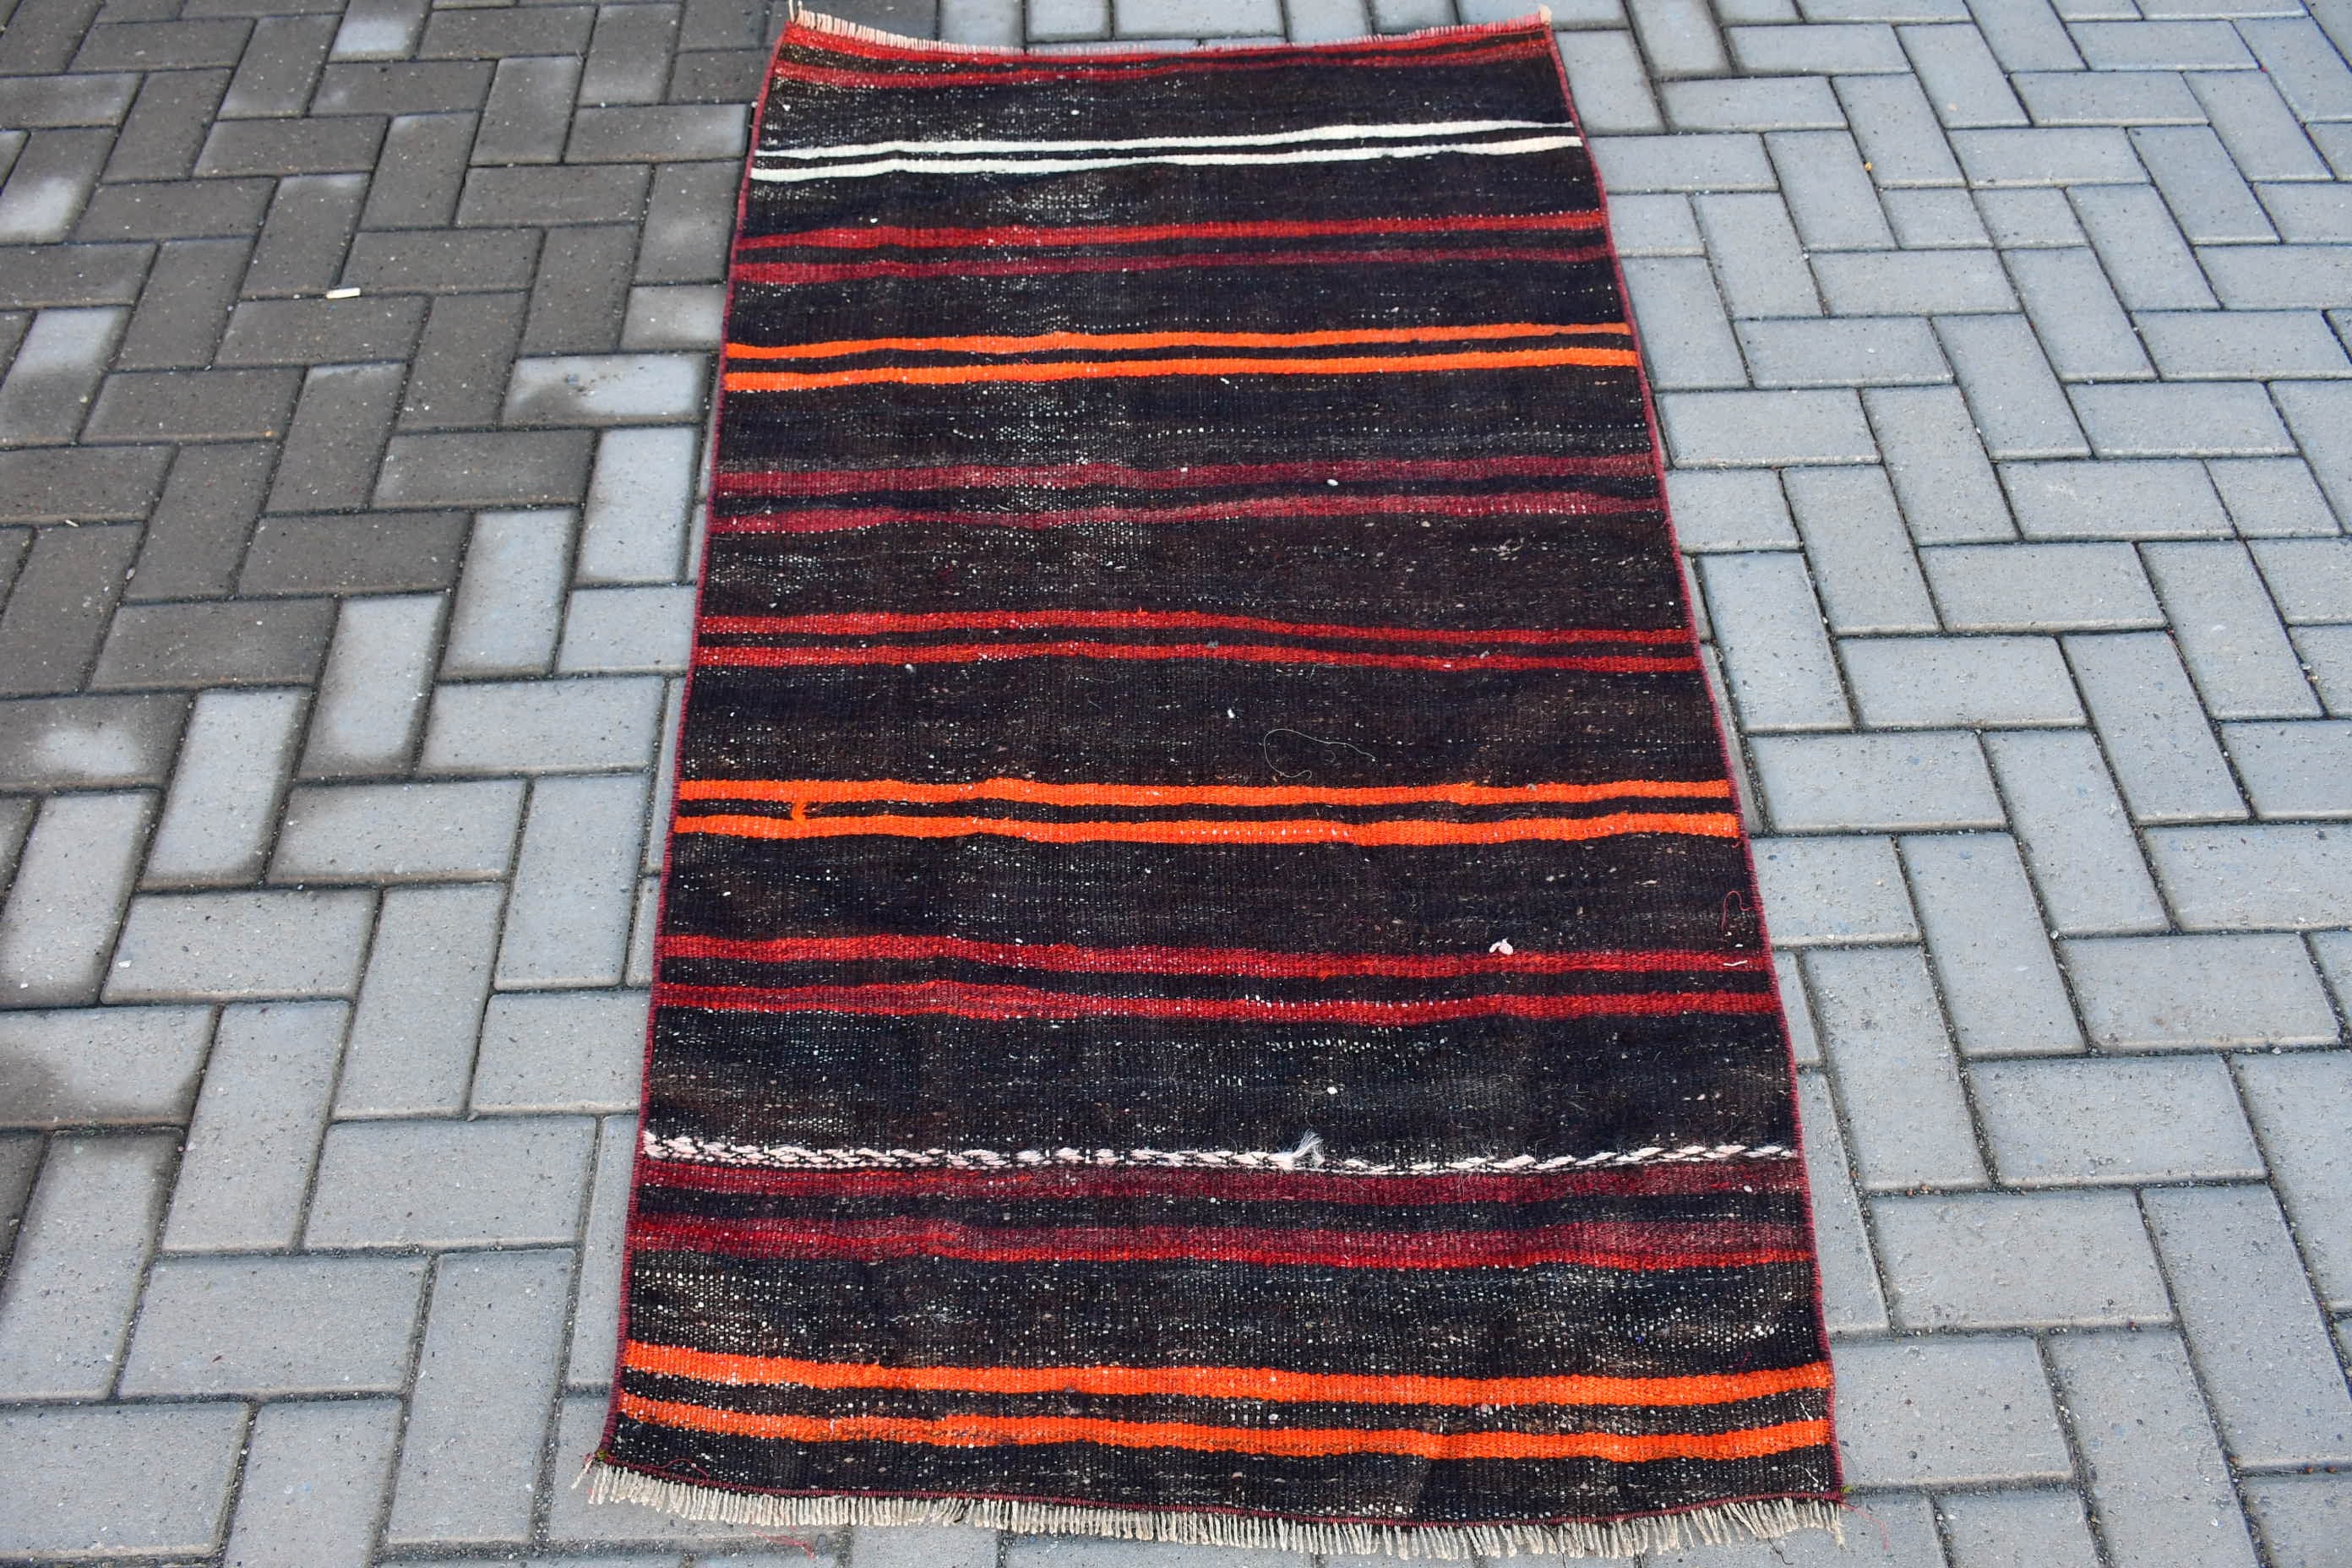 Turkish Rug, 2.7x5.2 ft Small Rug, Floor Rugs, Vintage Rug, Pale Rugs, Kilim, Antique Rug, Black Kitchen Rug, Bedroom Rugs, Door Mat Rug